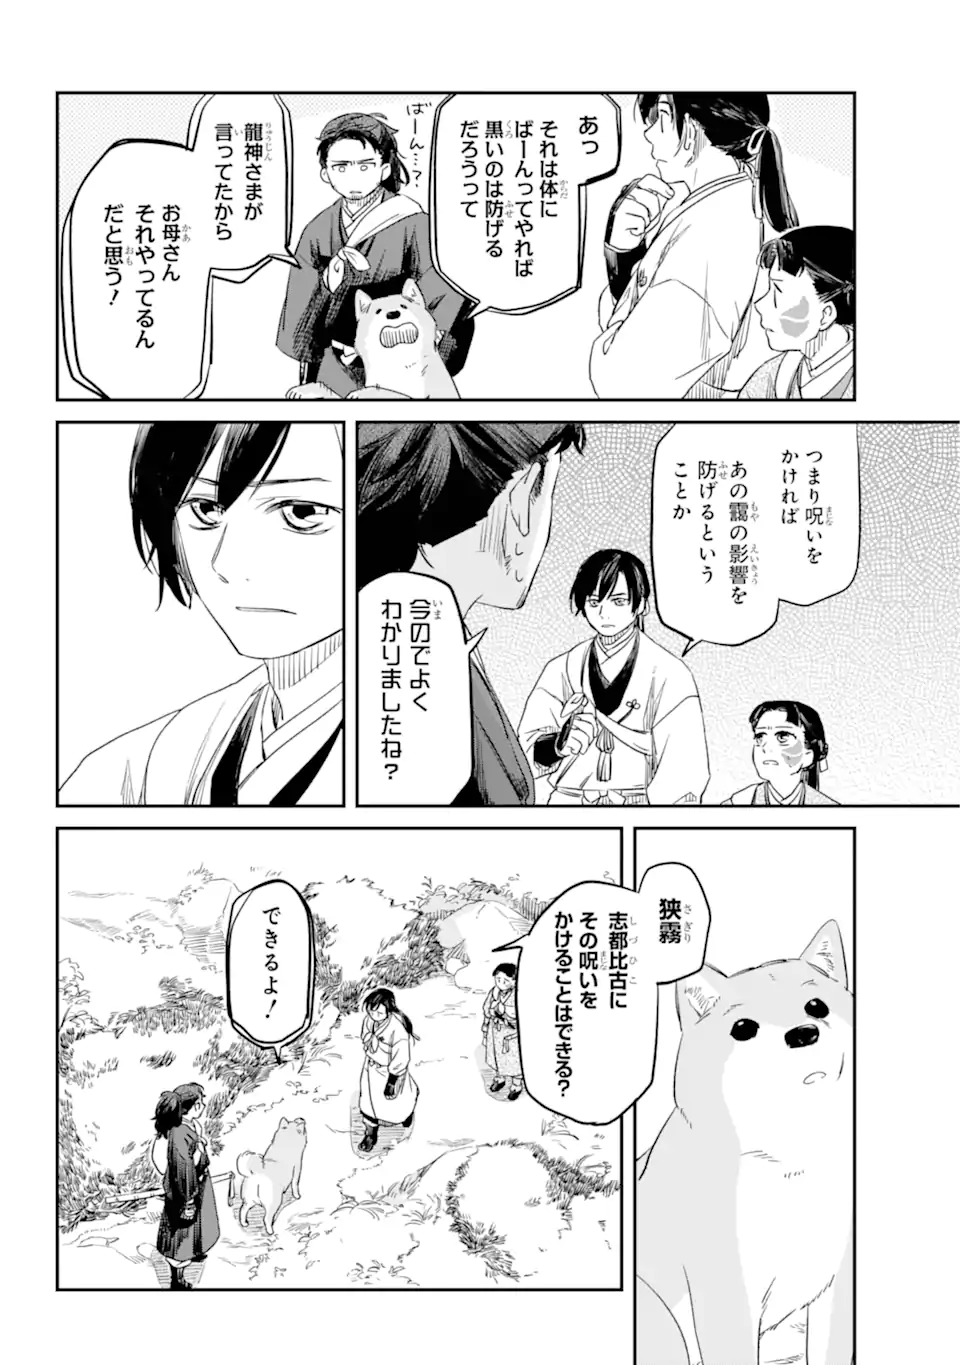 Ryuujin no Musume - Chapter 2.5 - Page 1